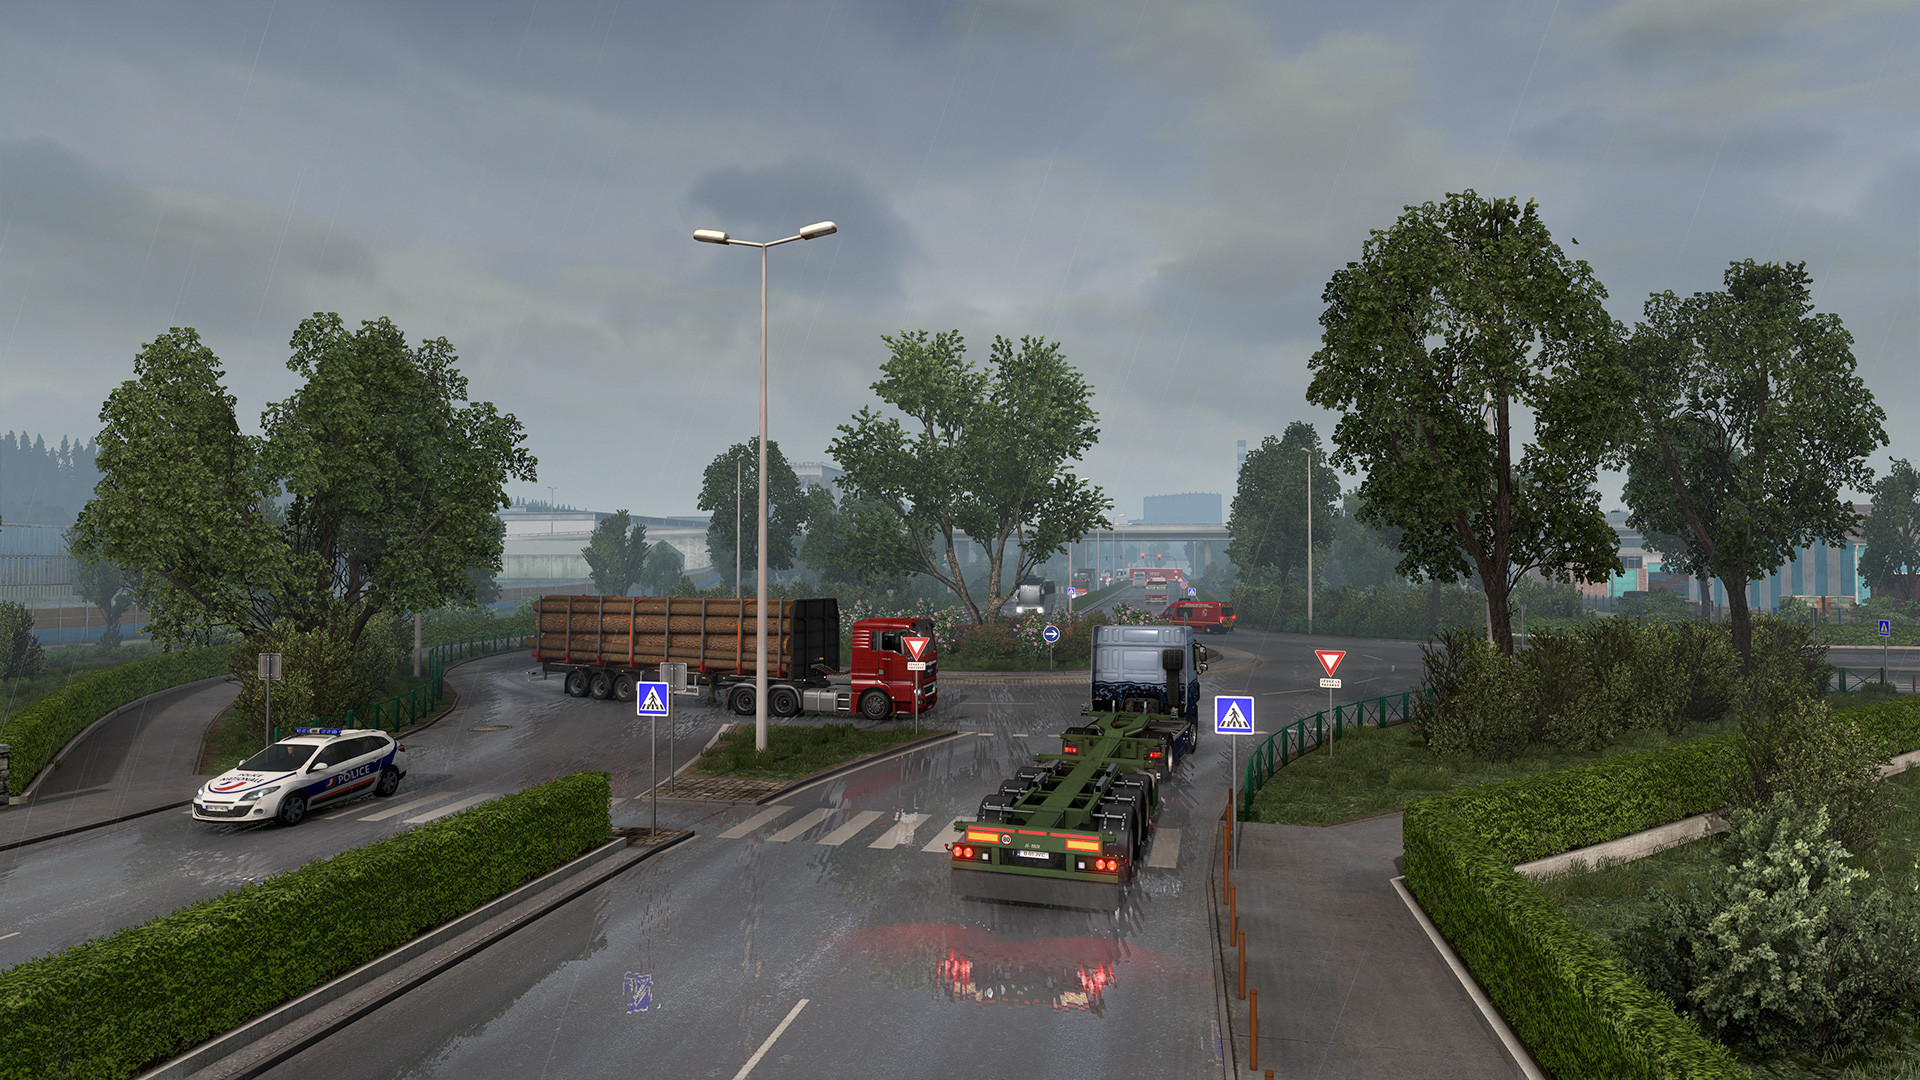 Euro Truck Simulator 2 (Steam Gift RU)